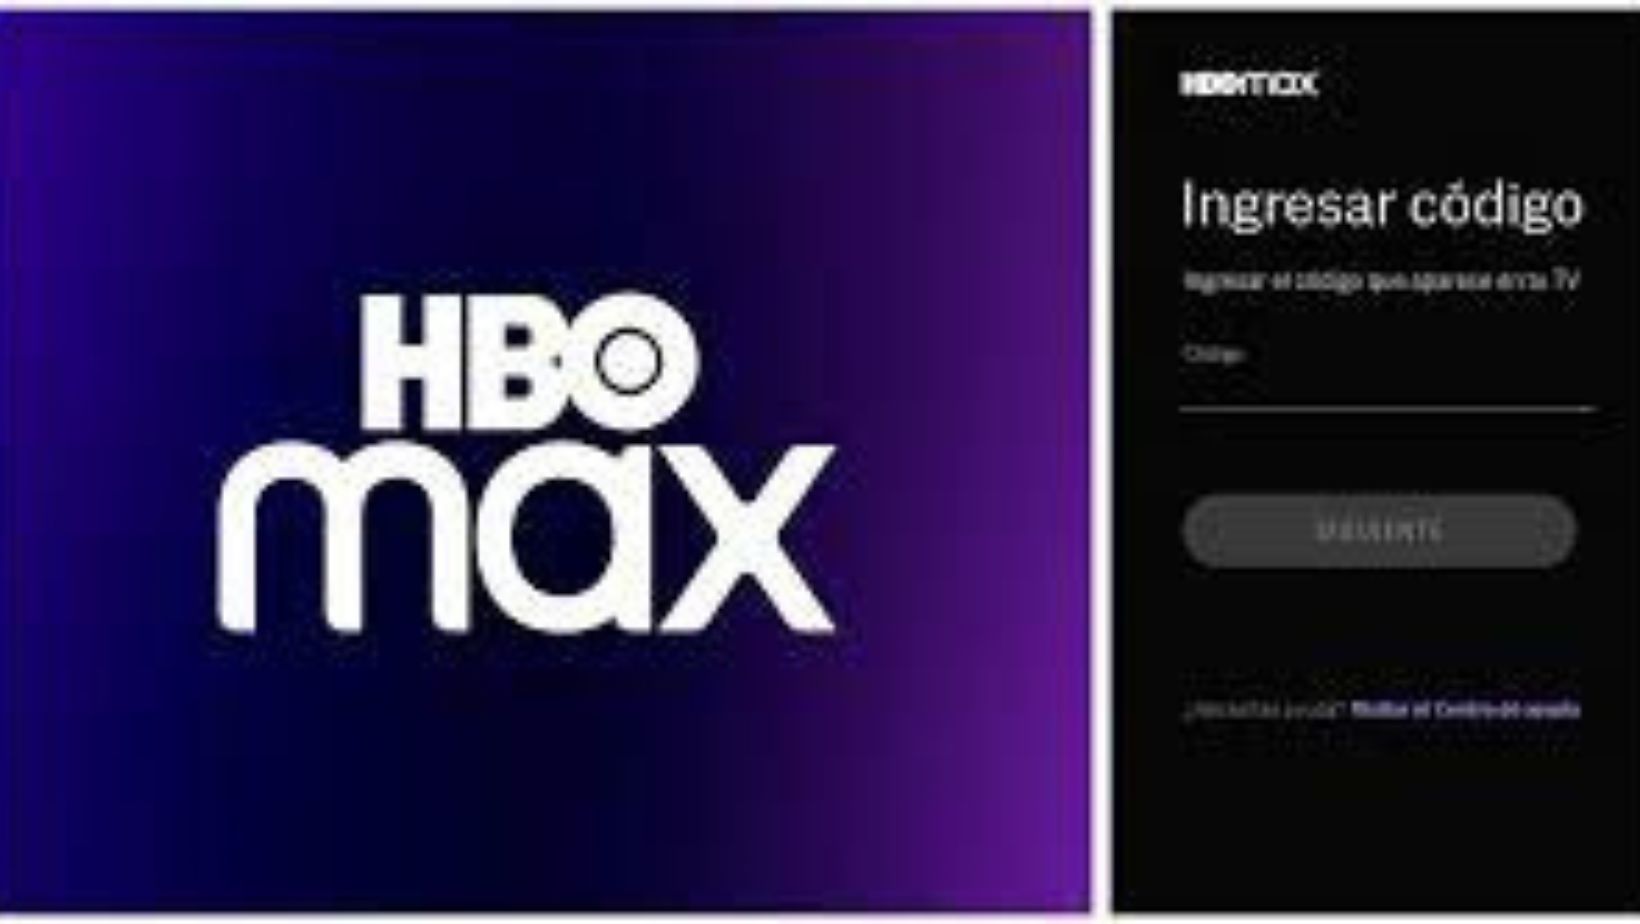 HBOmax.com/tvsignin Ingresar Codigo